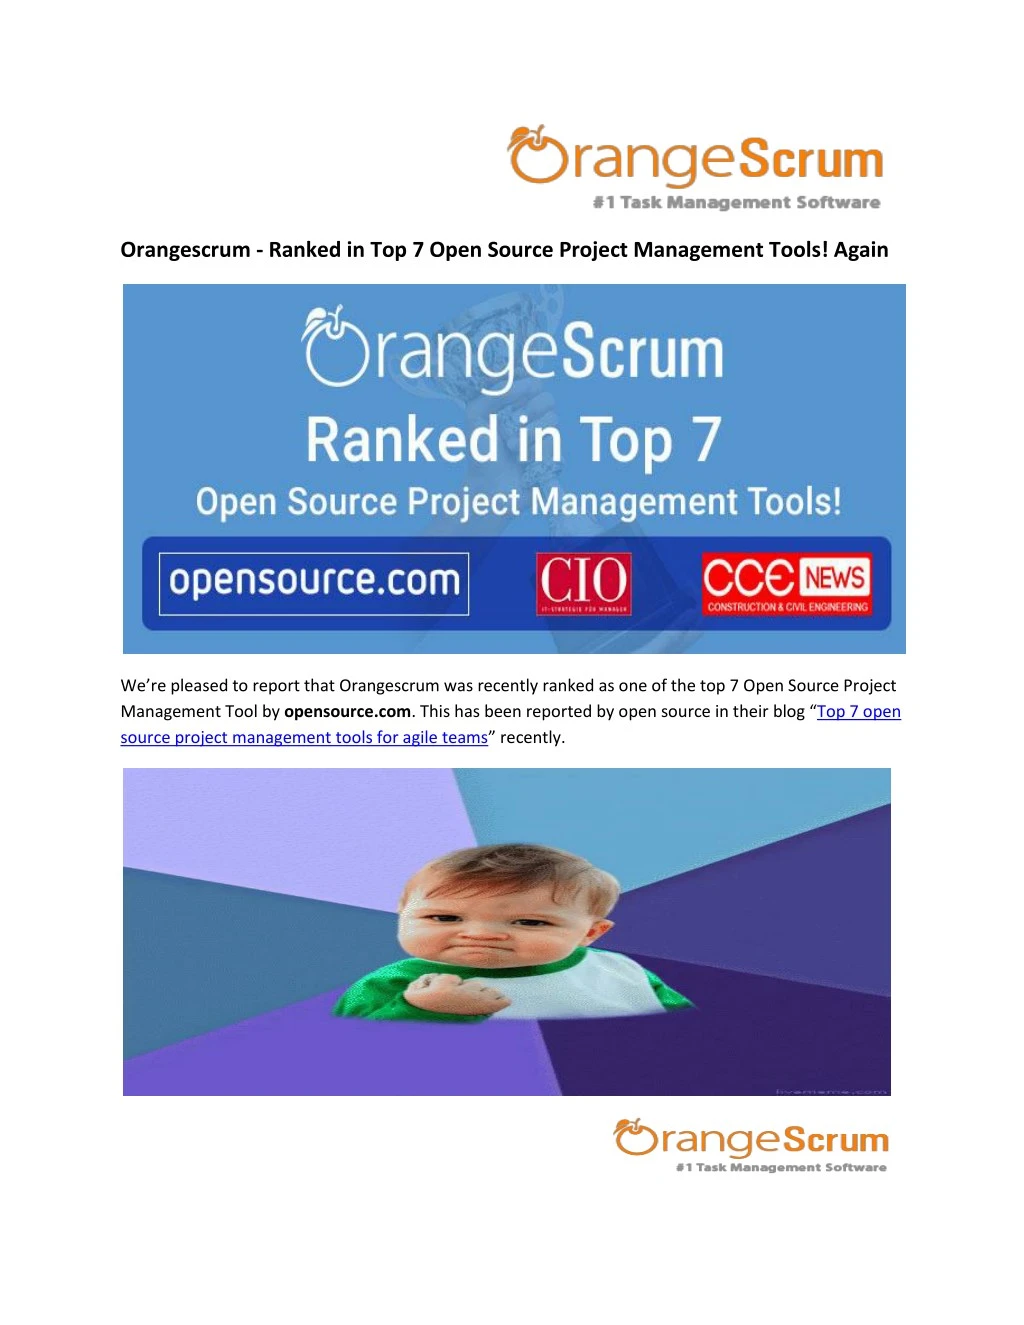 orangescrum ranked in top 7 open source project